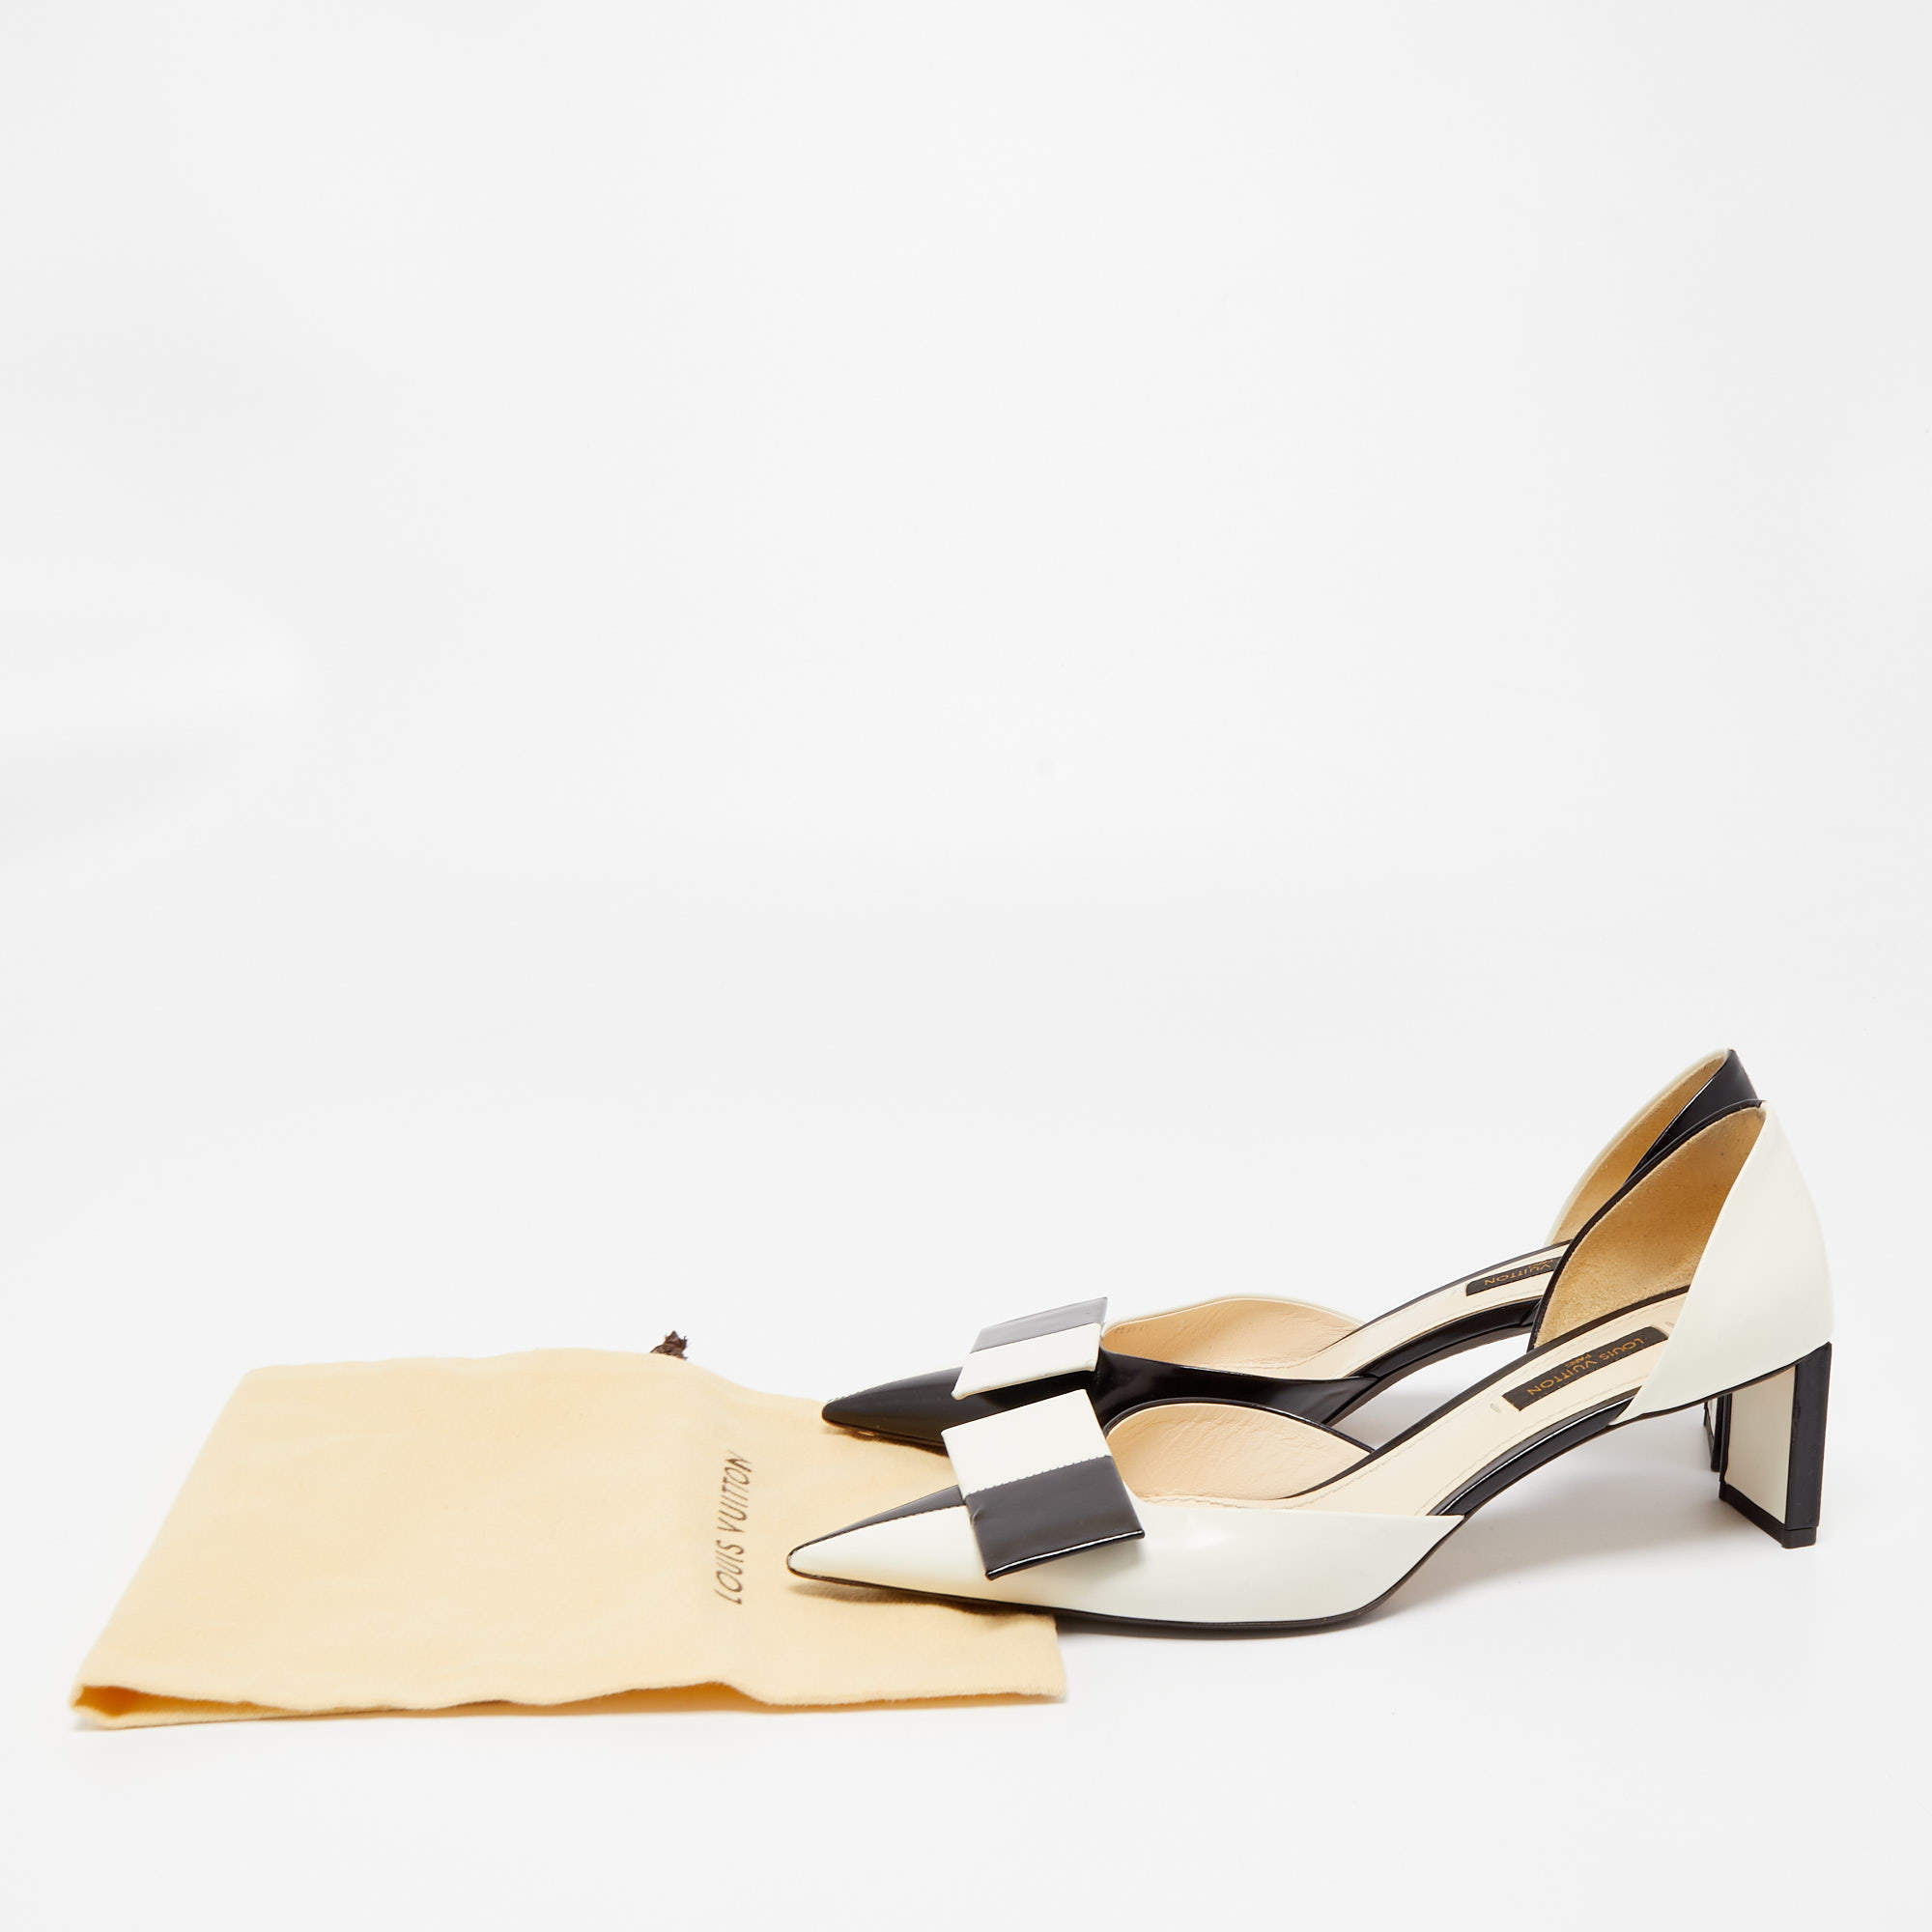 Louis Vuitton, Shoes, Louis Vuitton Black Satin Pleated Balmoral Bow  Detail Heels Pumps Size 37 Us 7